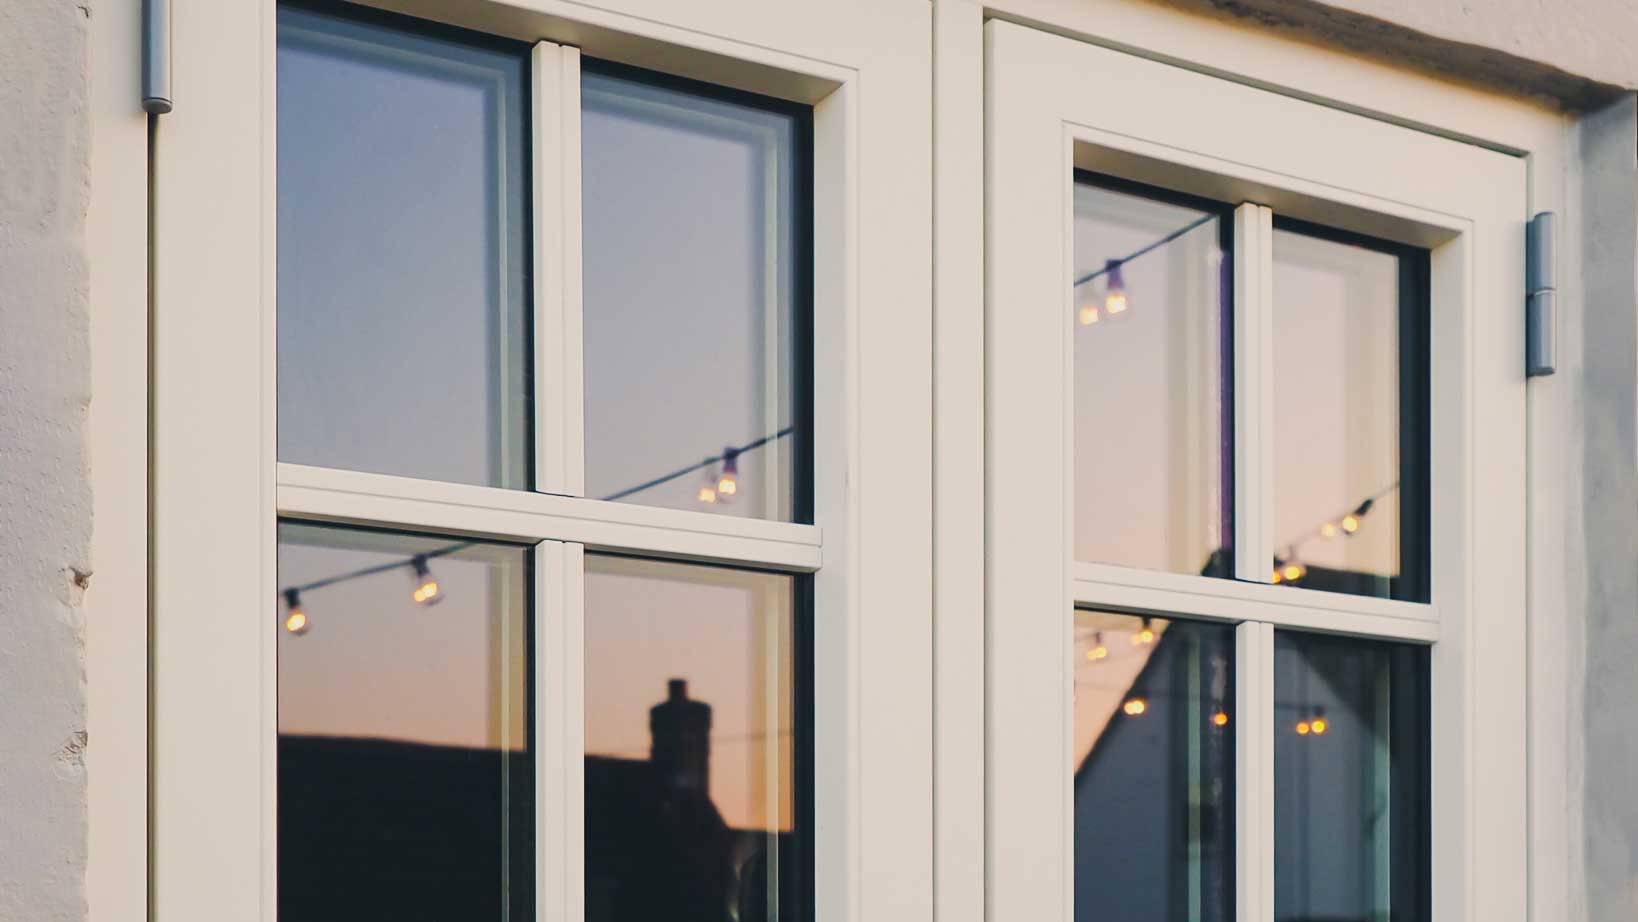 Byt ut dina gamla fönster med nya energieffektiva fönster image